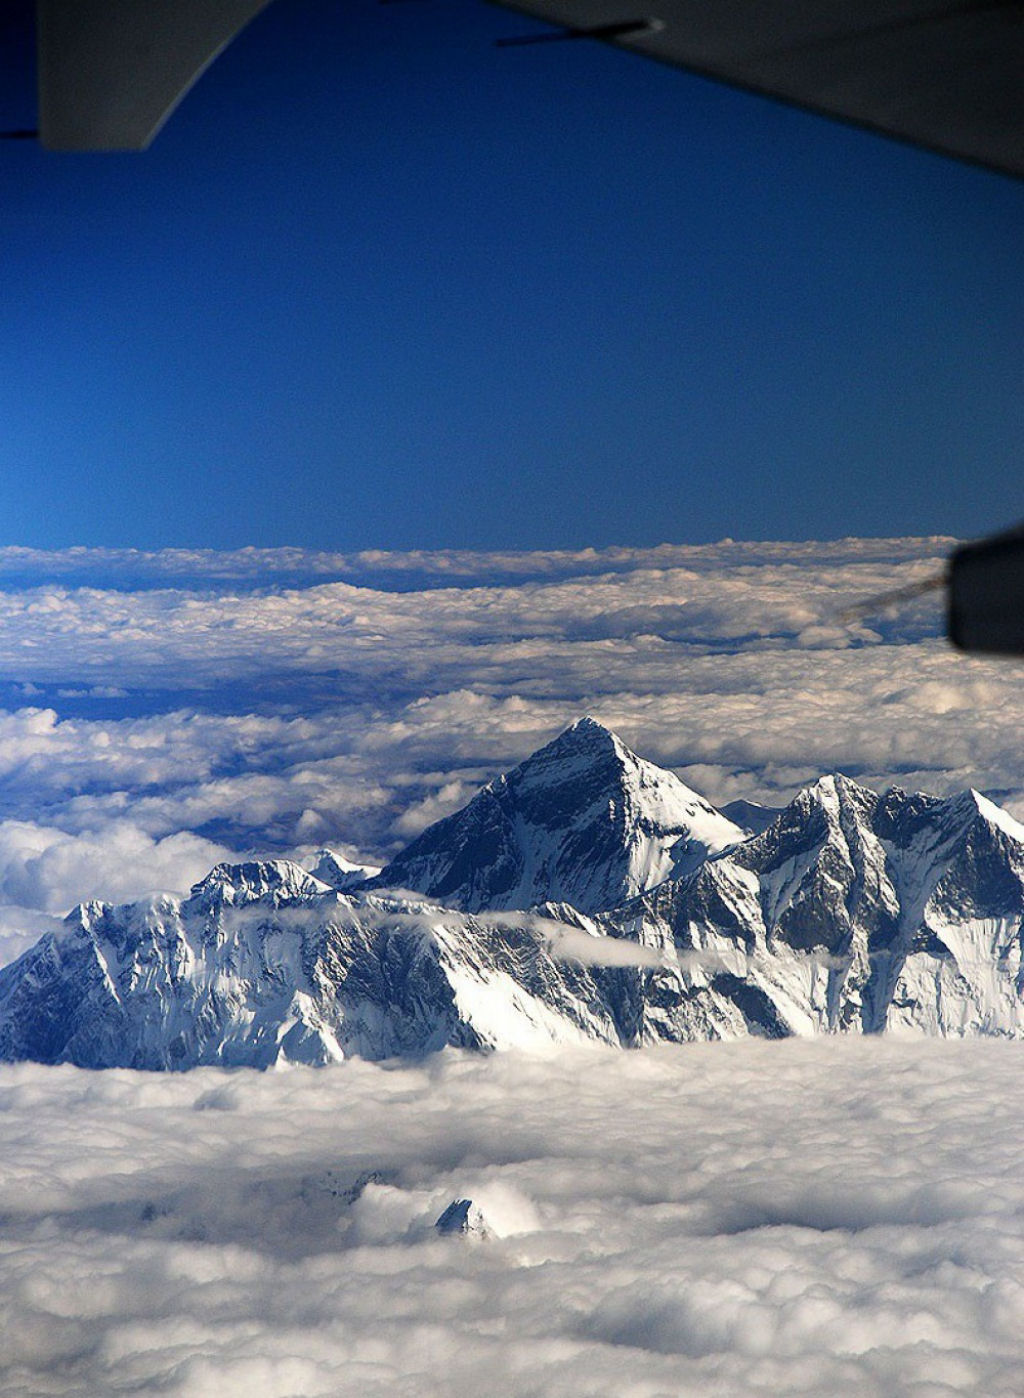 Vista do Monte Everest desde um avião. Por infoglaz.